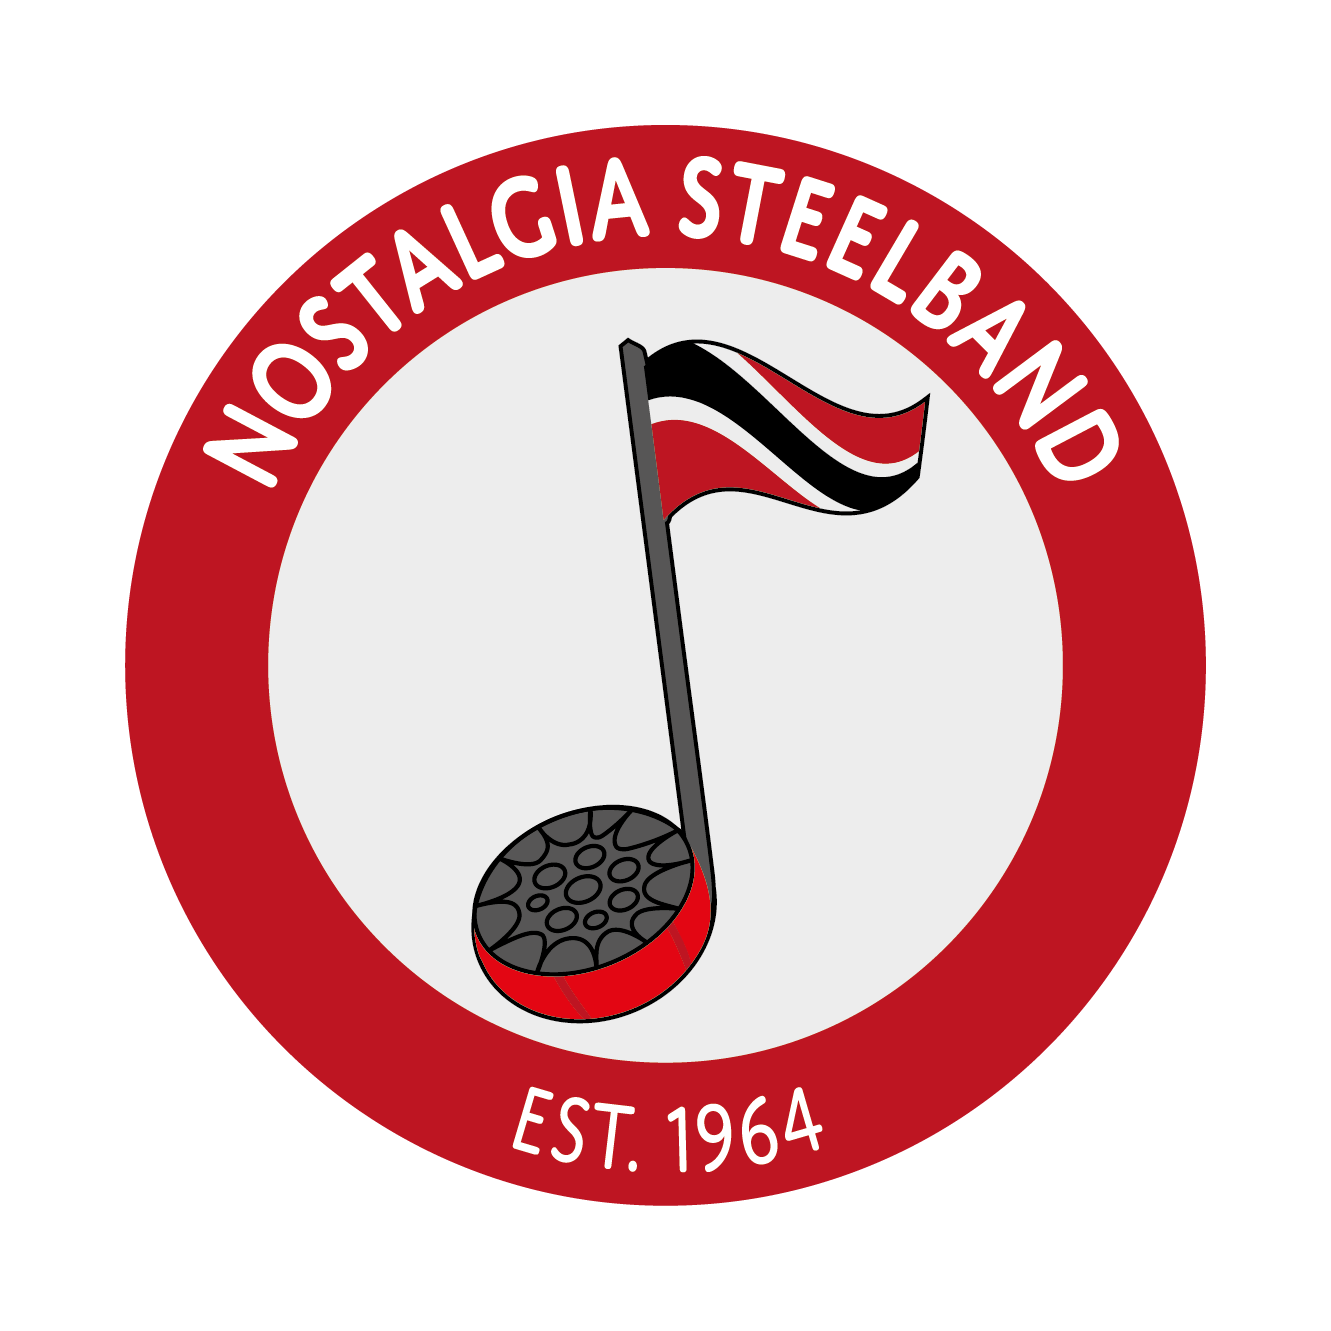 Nostalgia Steelband